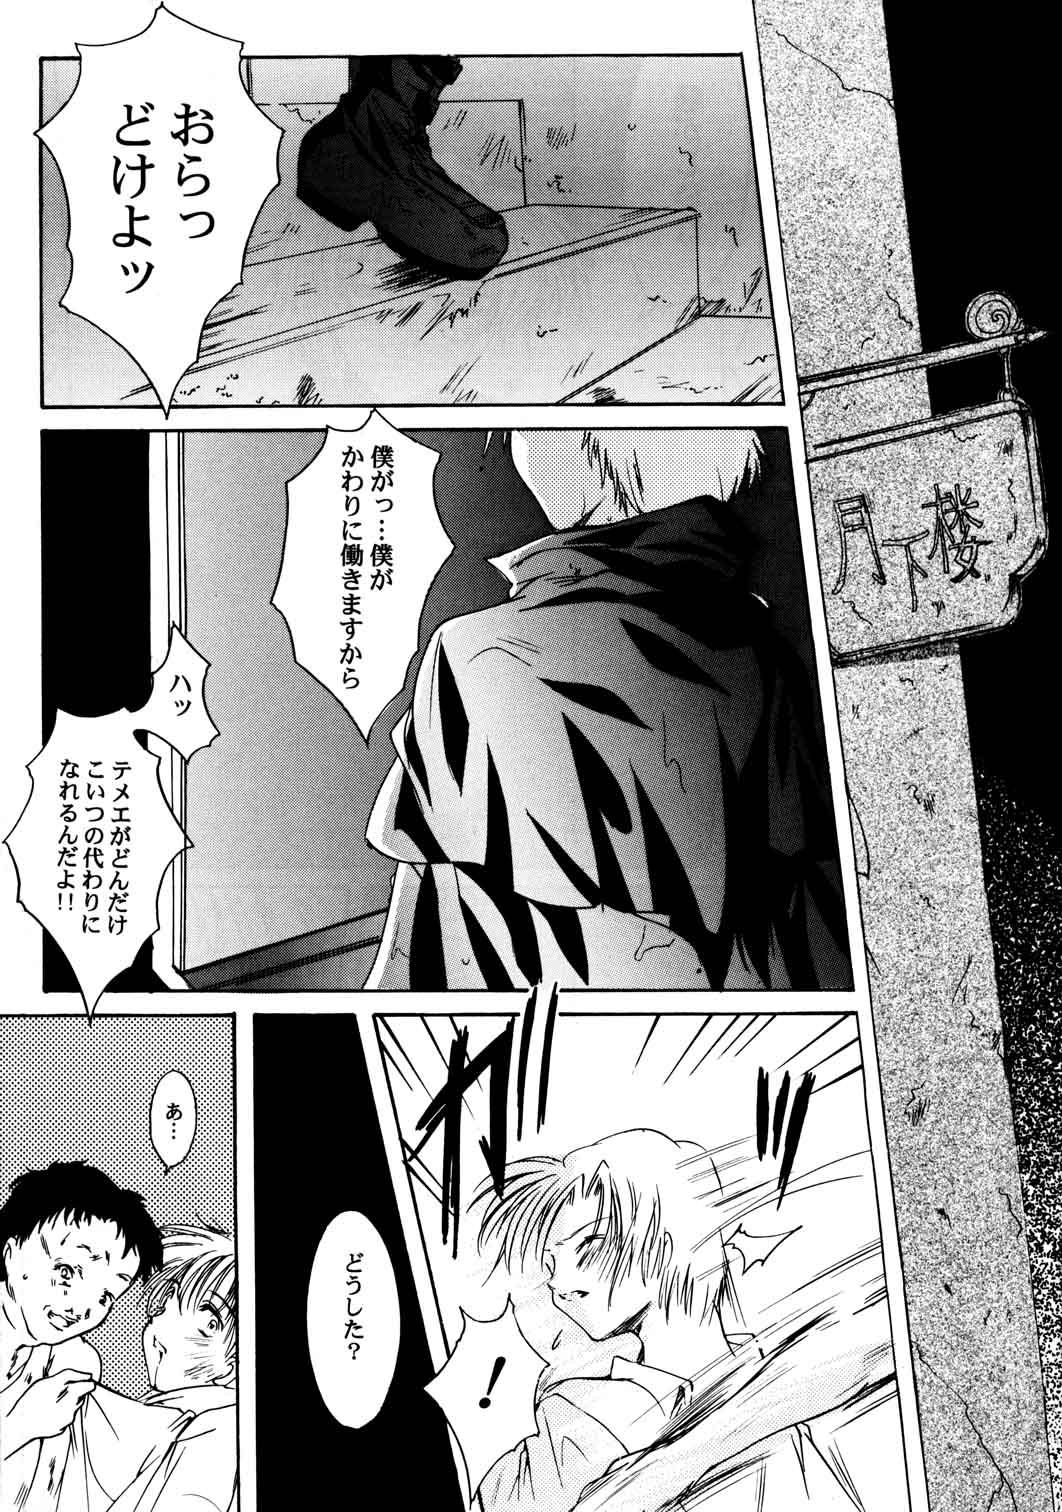 Finger Shiori Aganai no Yoru - Tokimeki memorial Flash - Page 8